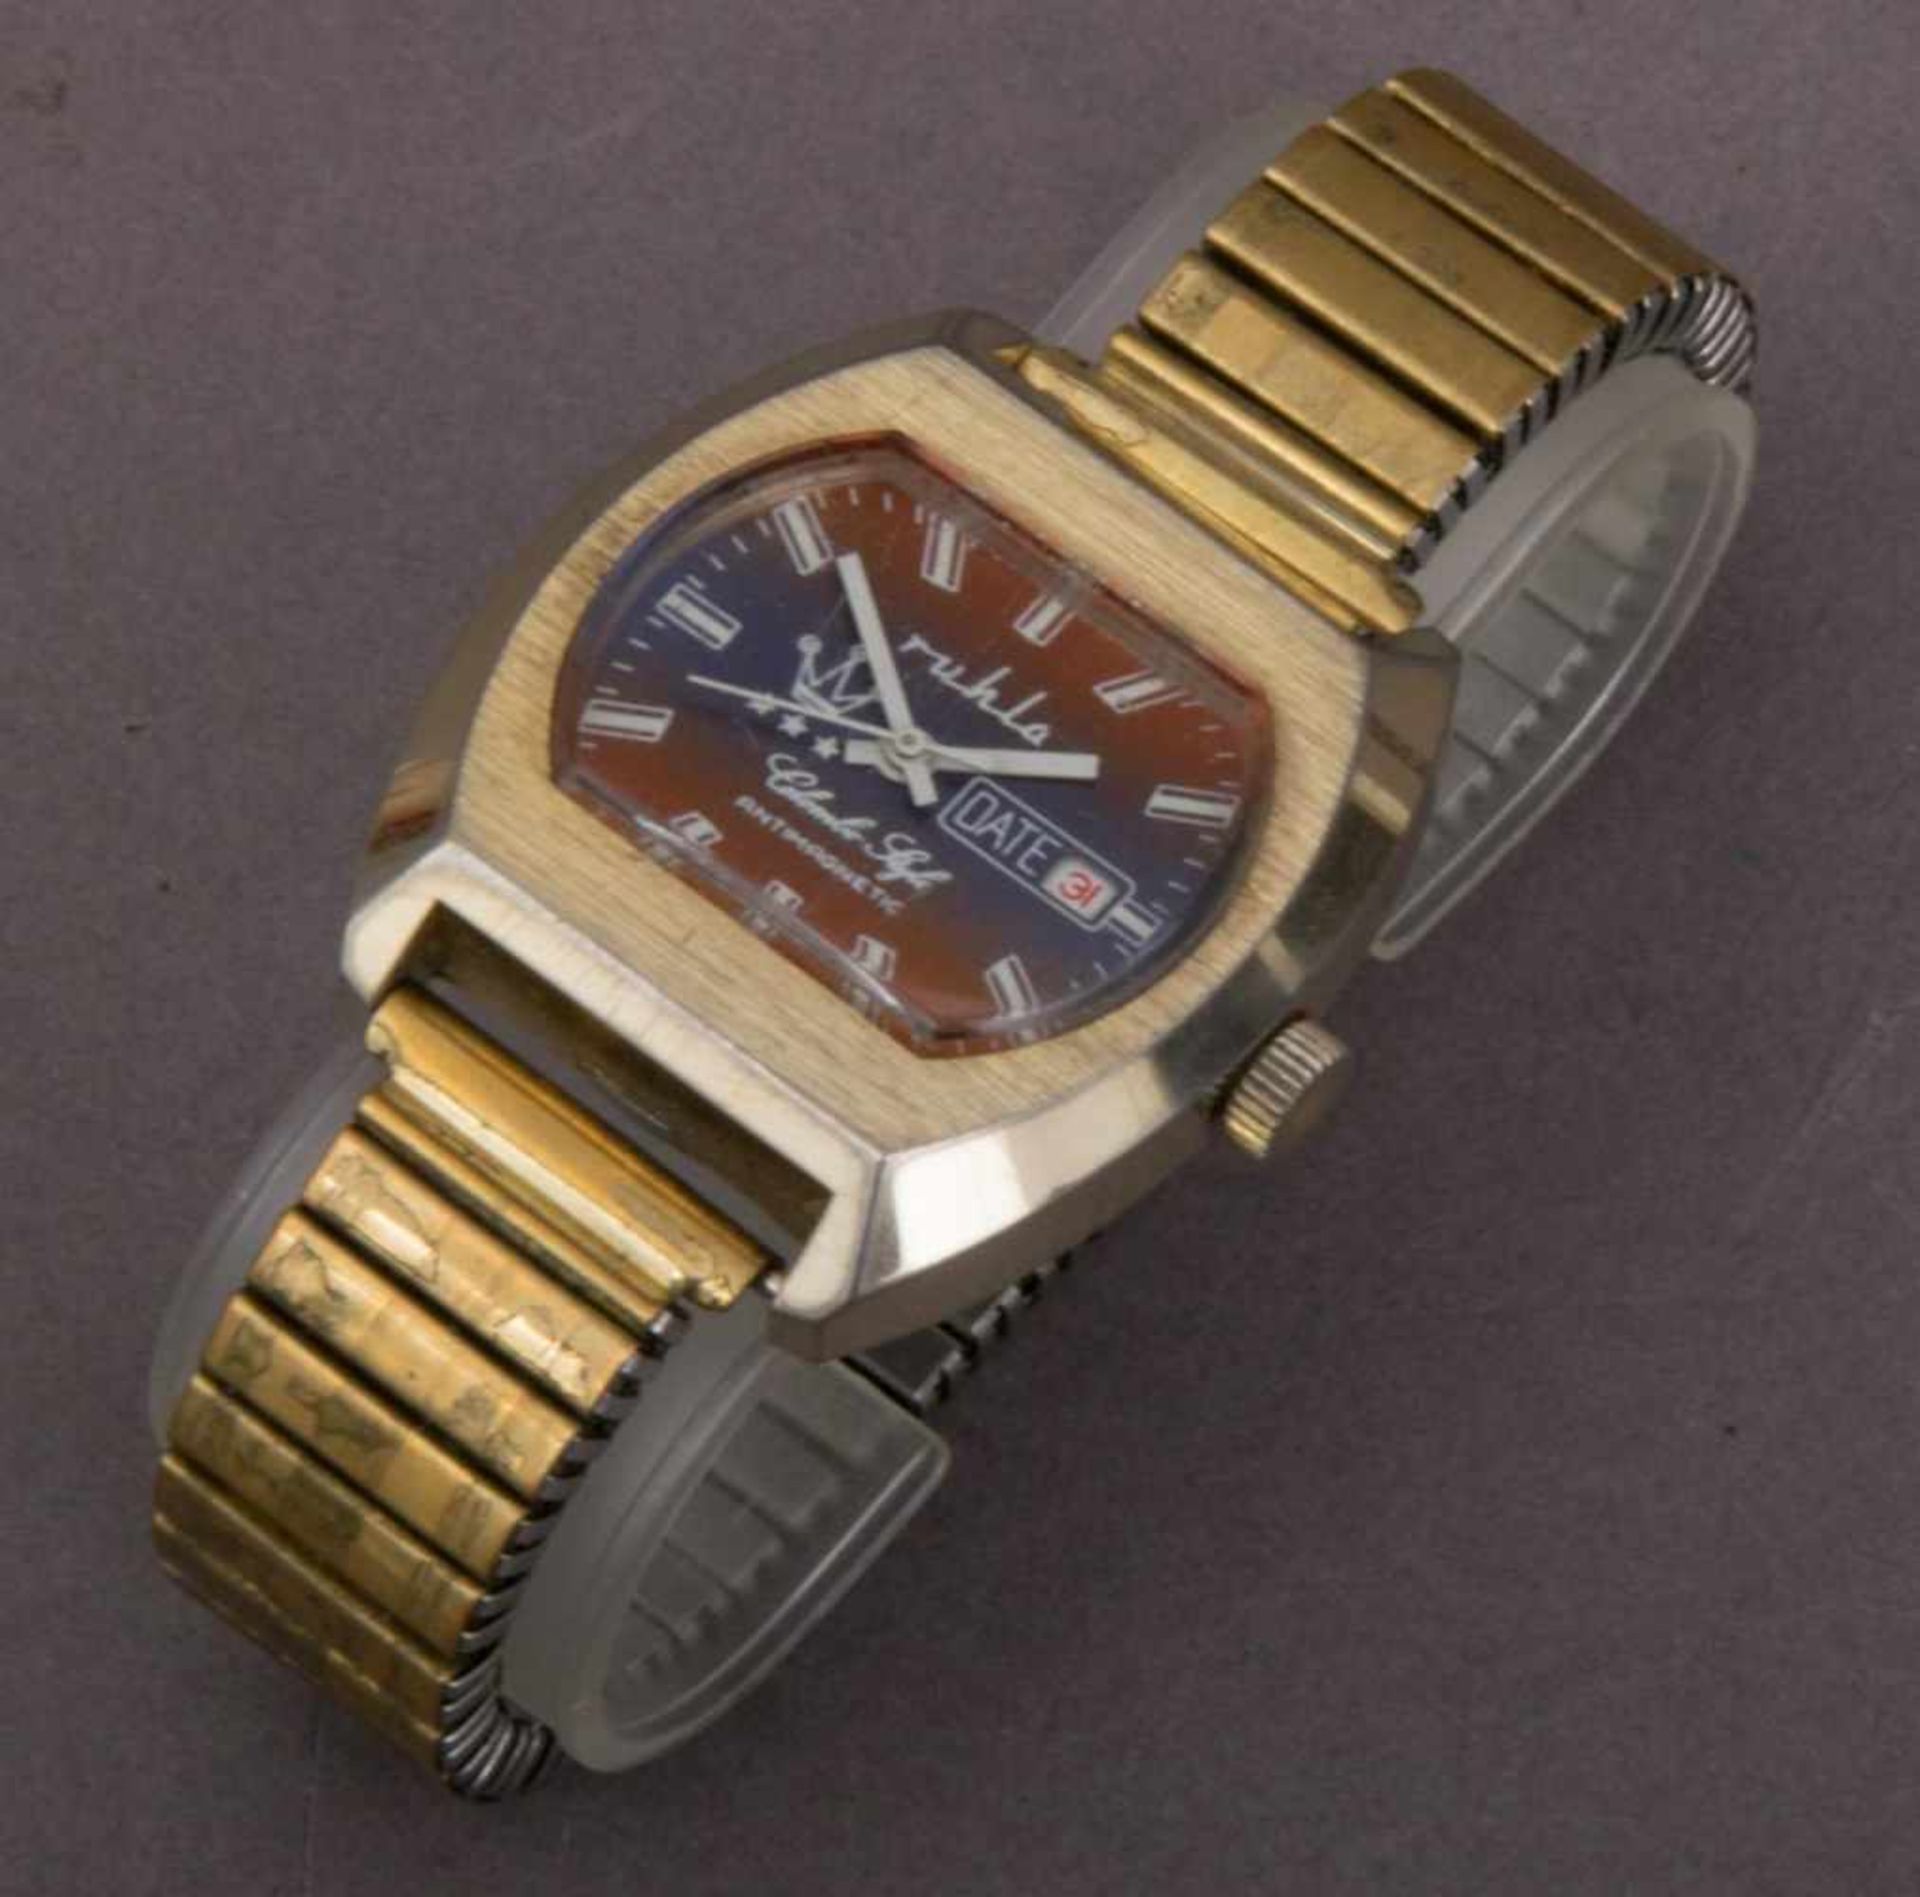 3 alte RUHLA - Armbanduhren, Mittel 20. Jhd. Versch. Modelle, Formen, Größen, Erhalt & Funktionen. - Image 2 of 8